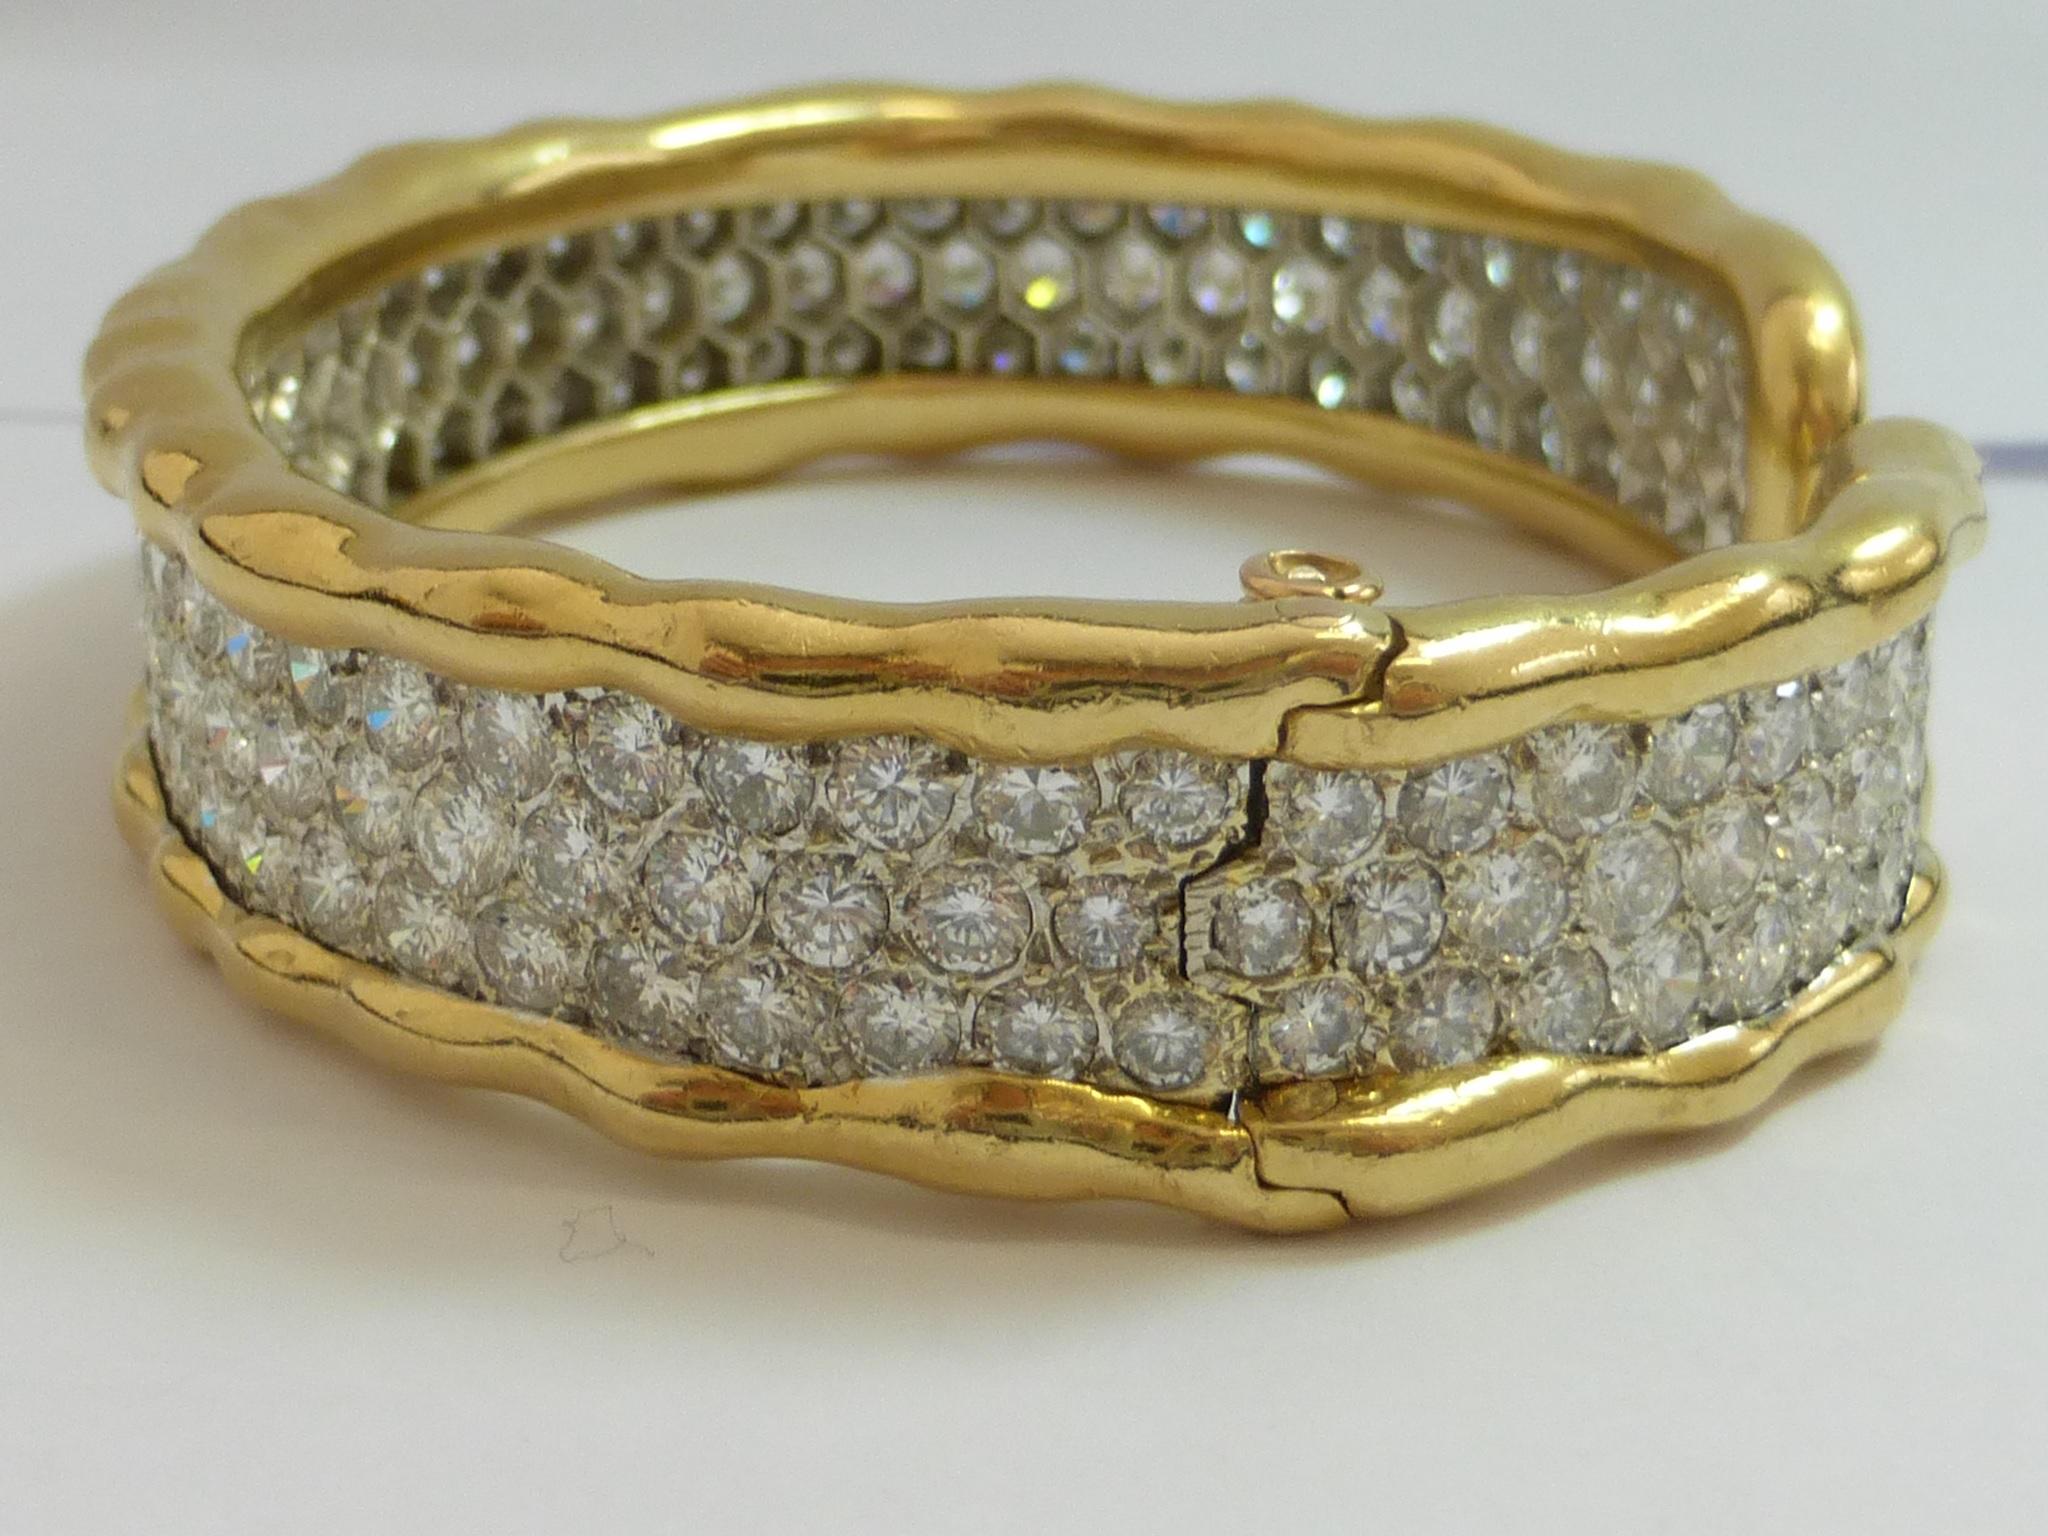 Women's Van Cleef & Arpels Gold Bangle Bracelet with Diamonds 